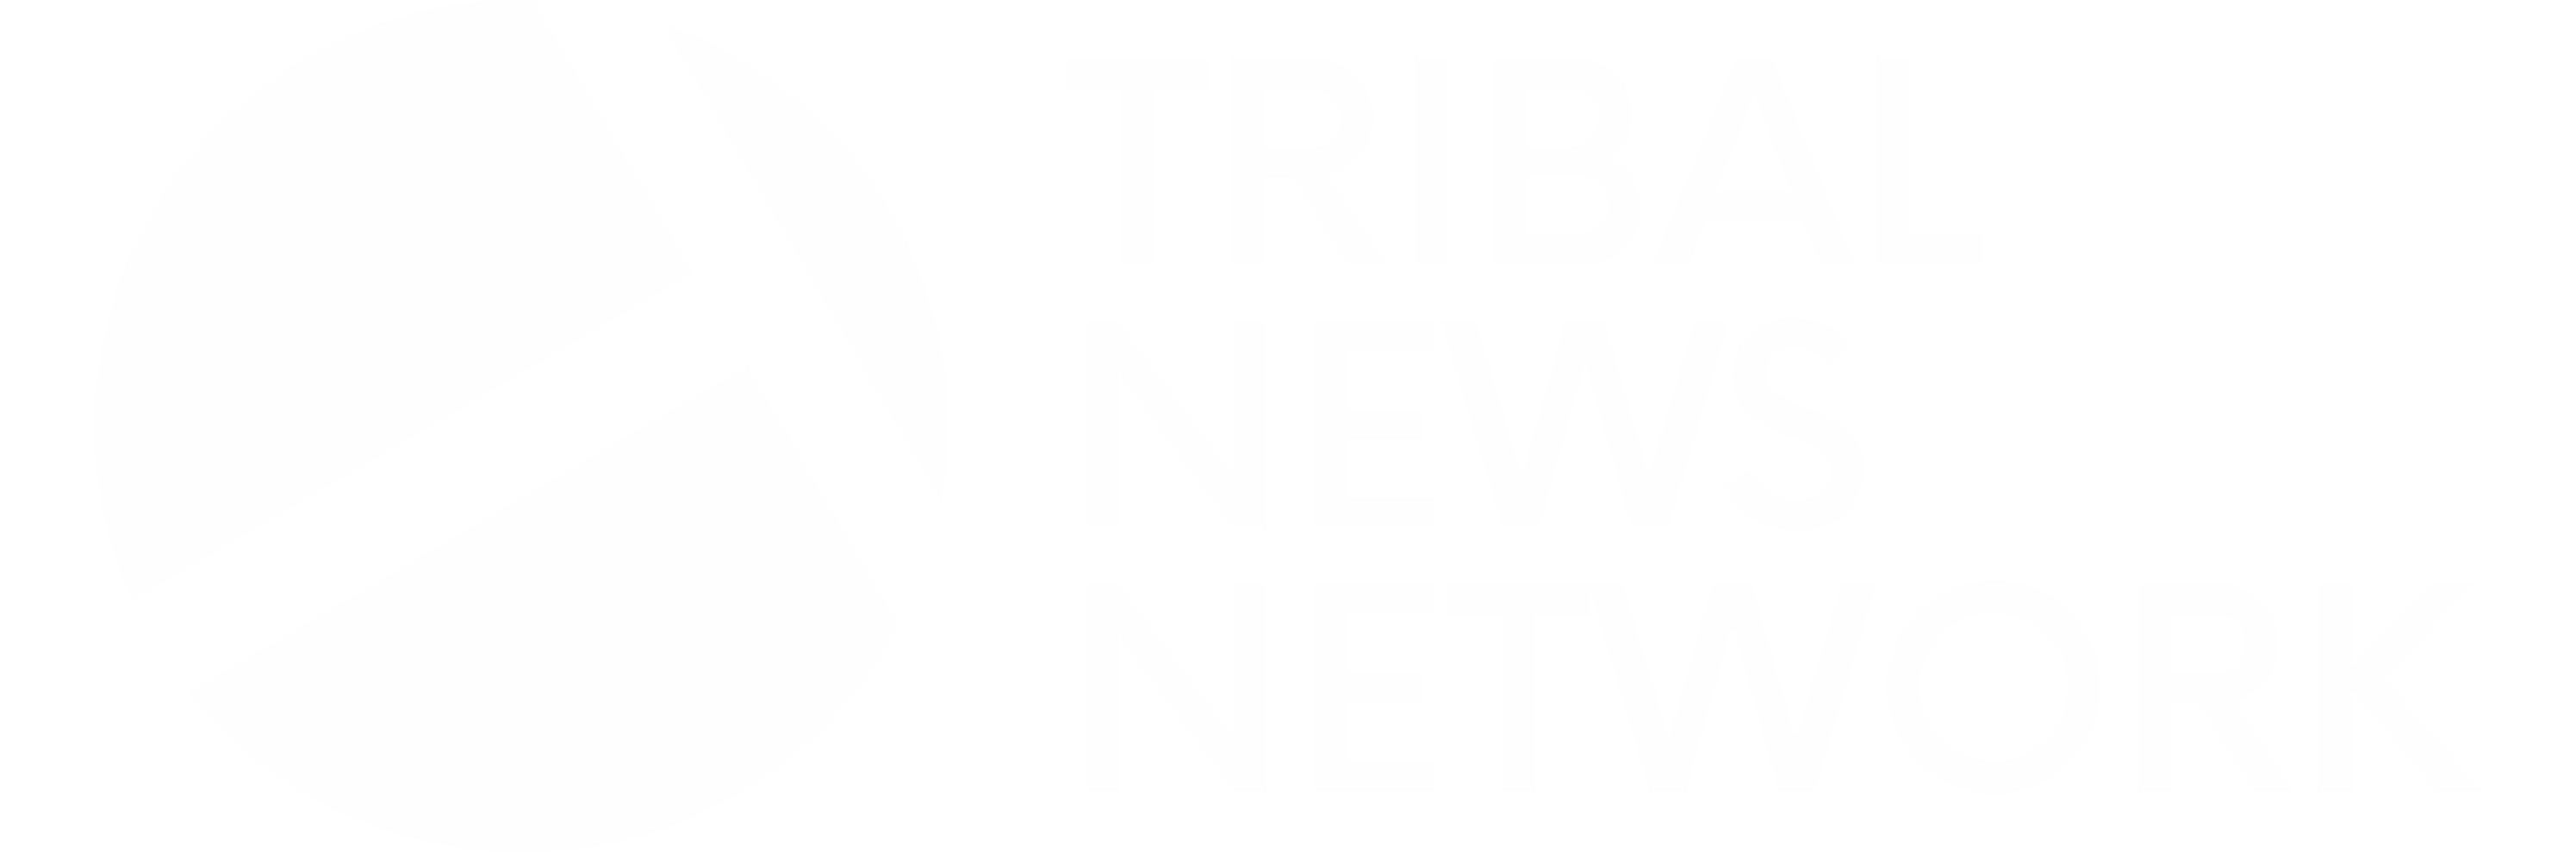 Tribal News Network Logo | TNN